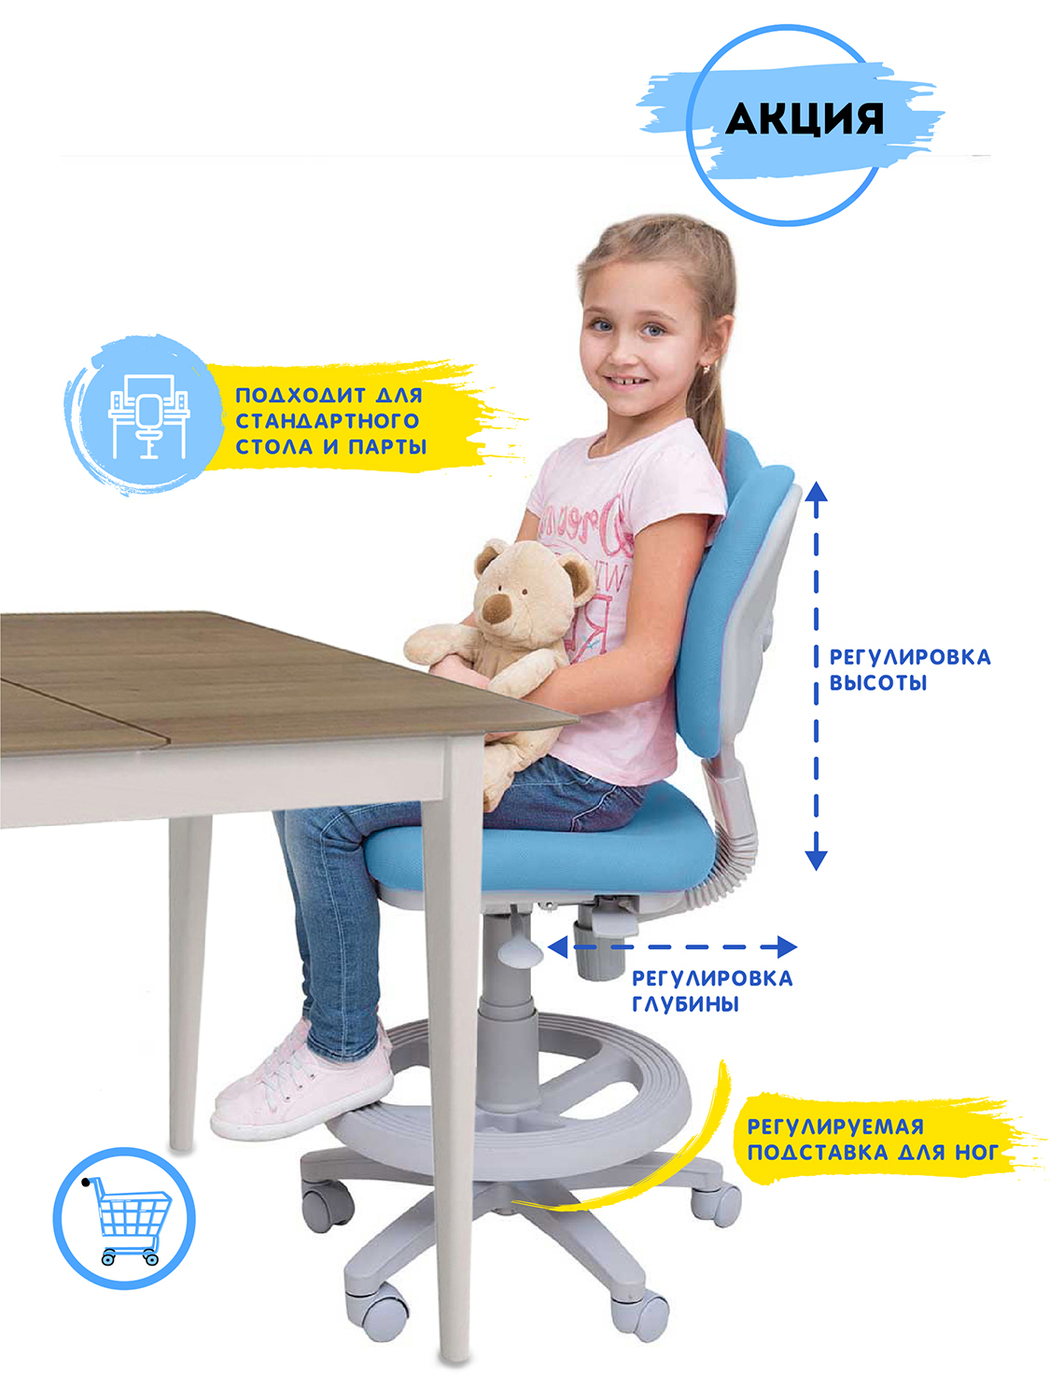 Растущее детское кресло с подставкой для ног